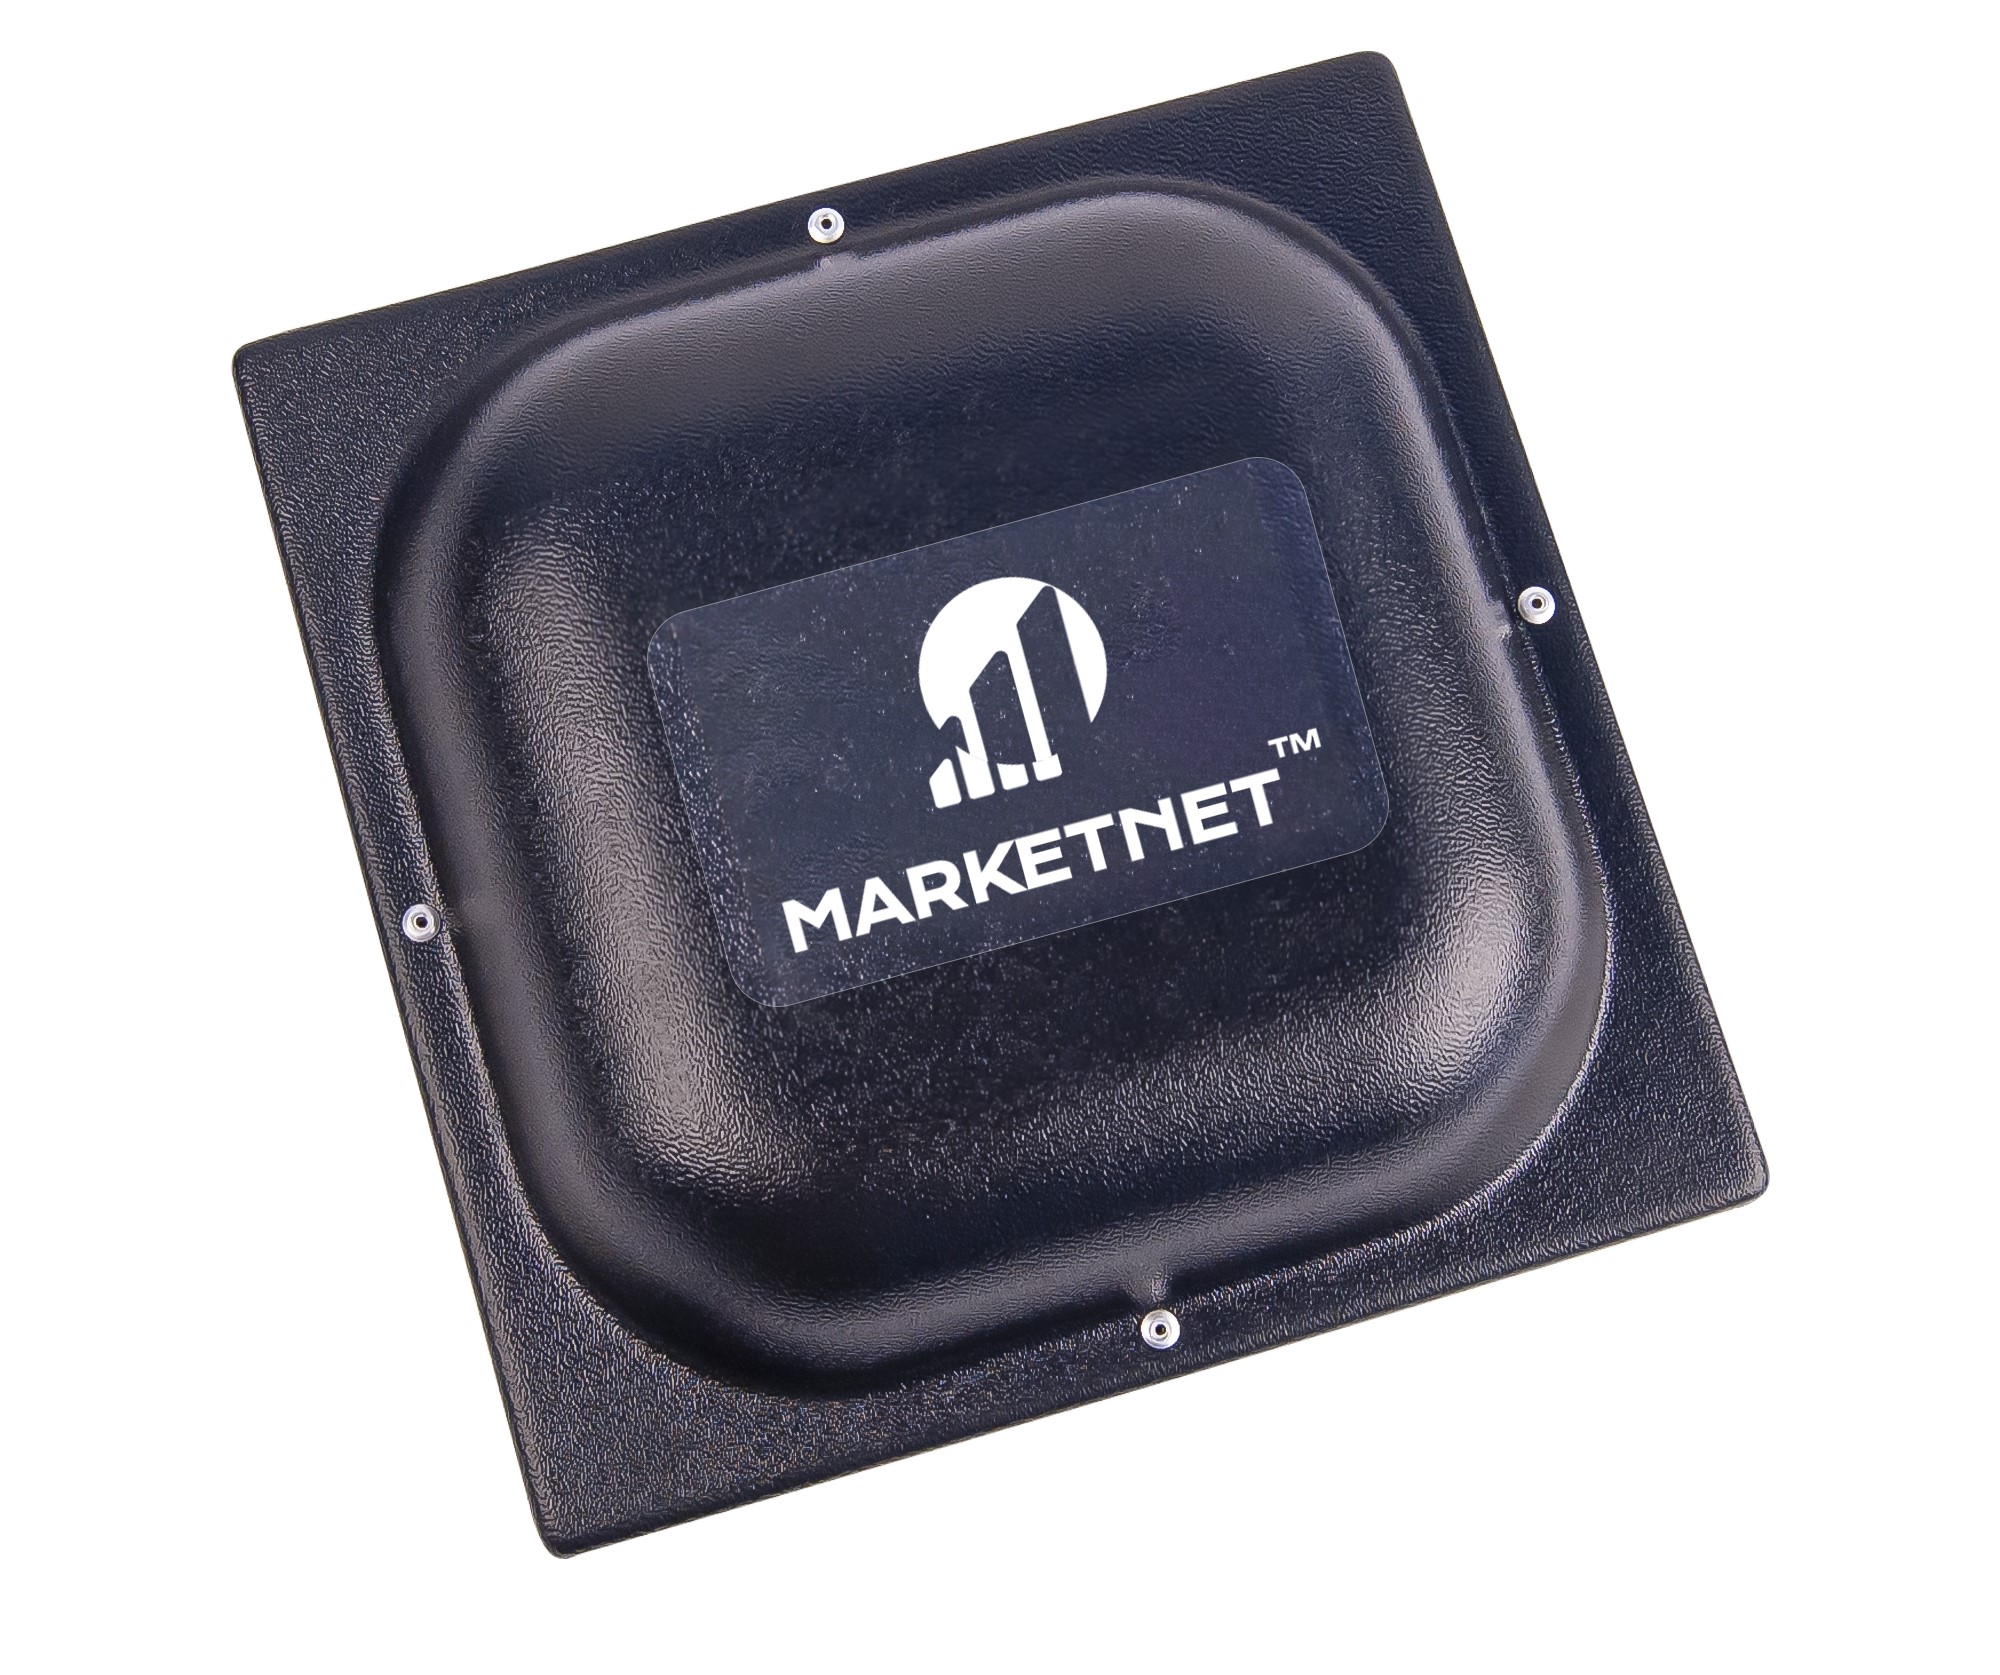 Купить 4G антенну панельную Маркетнет Т800 для усиления сигнала мобильной связи и интернета в интернет-магазине marketnet.com.ua. MIMO Marketnet T800